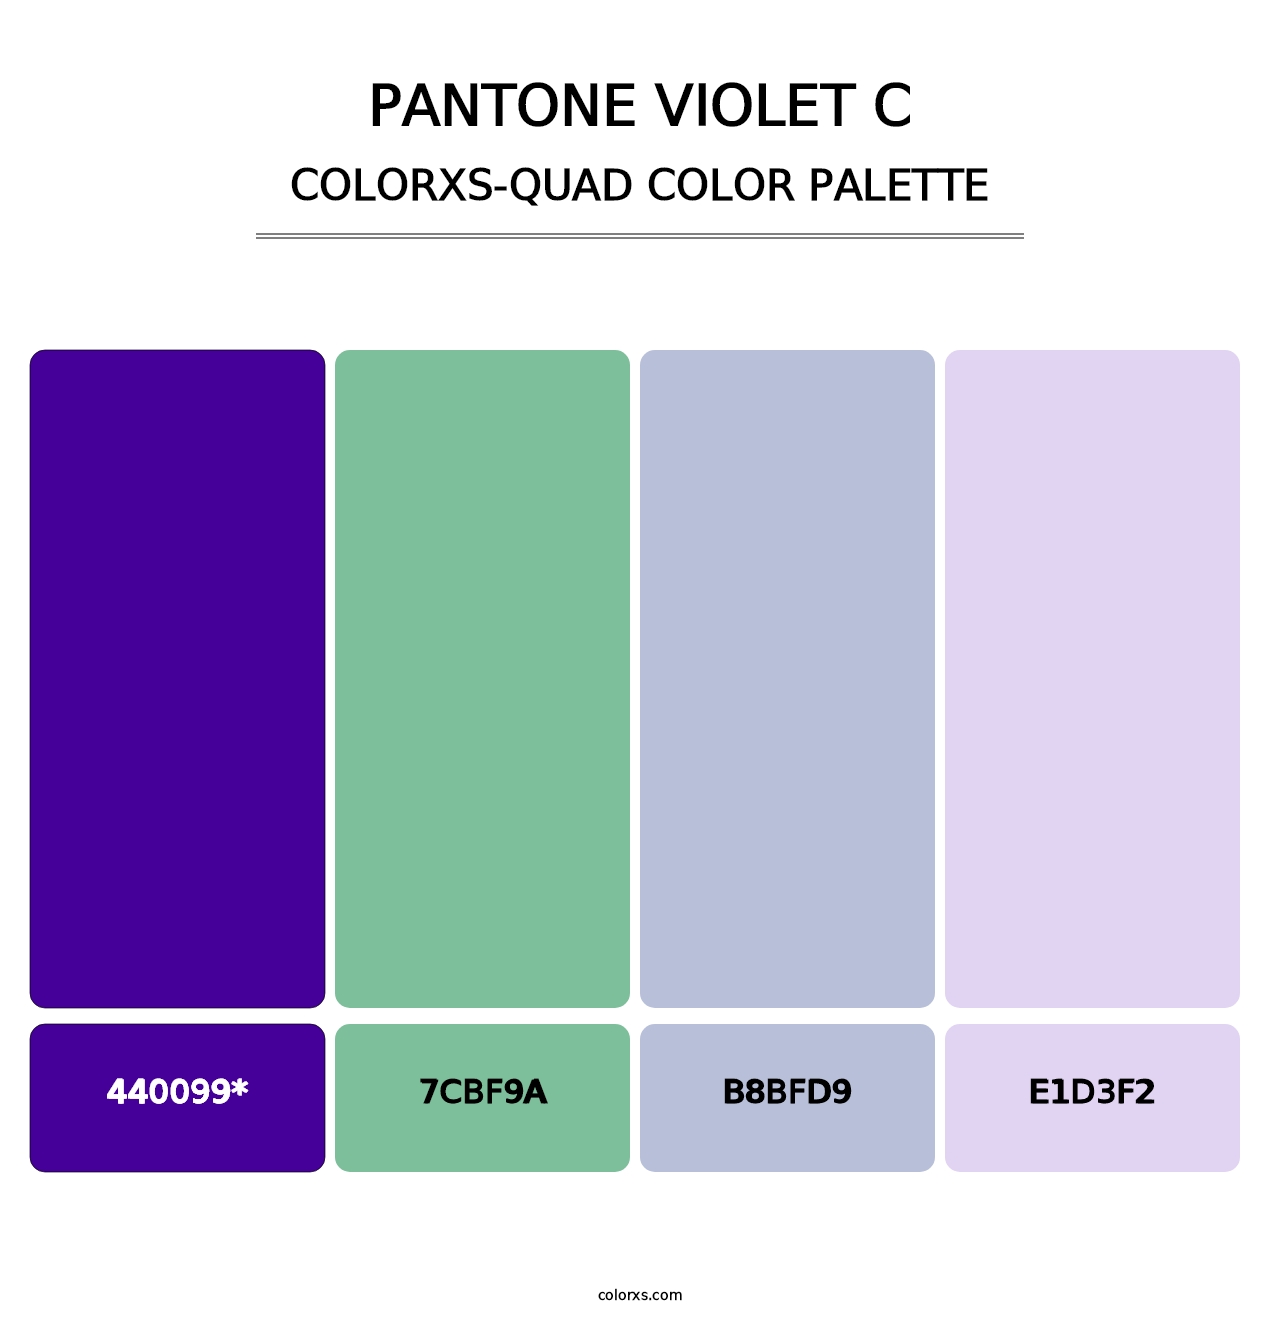 PANTONE Violet C - Colorxs Quad Palette